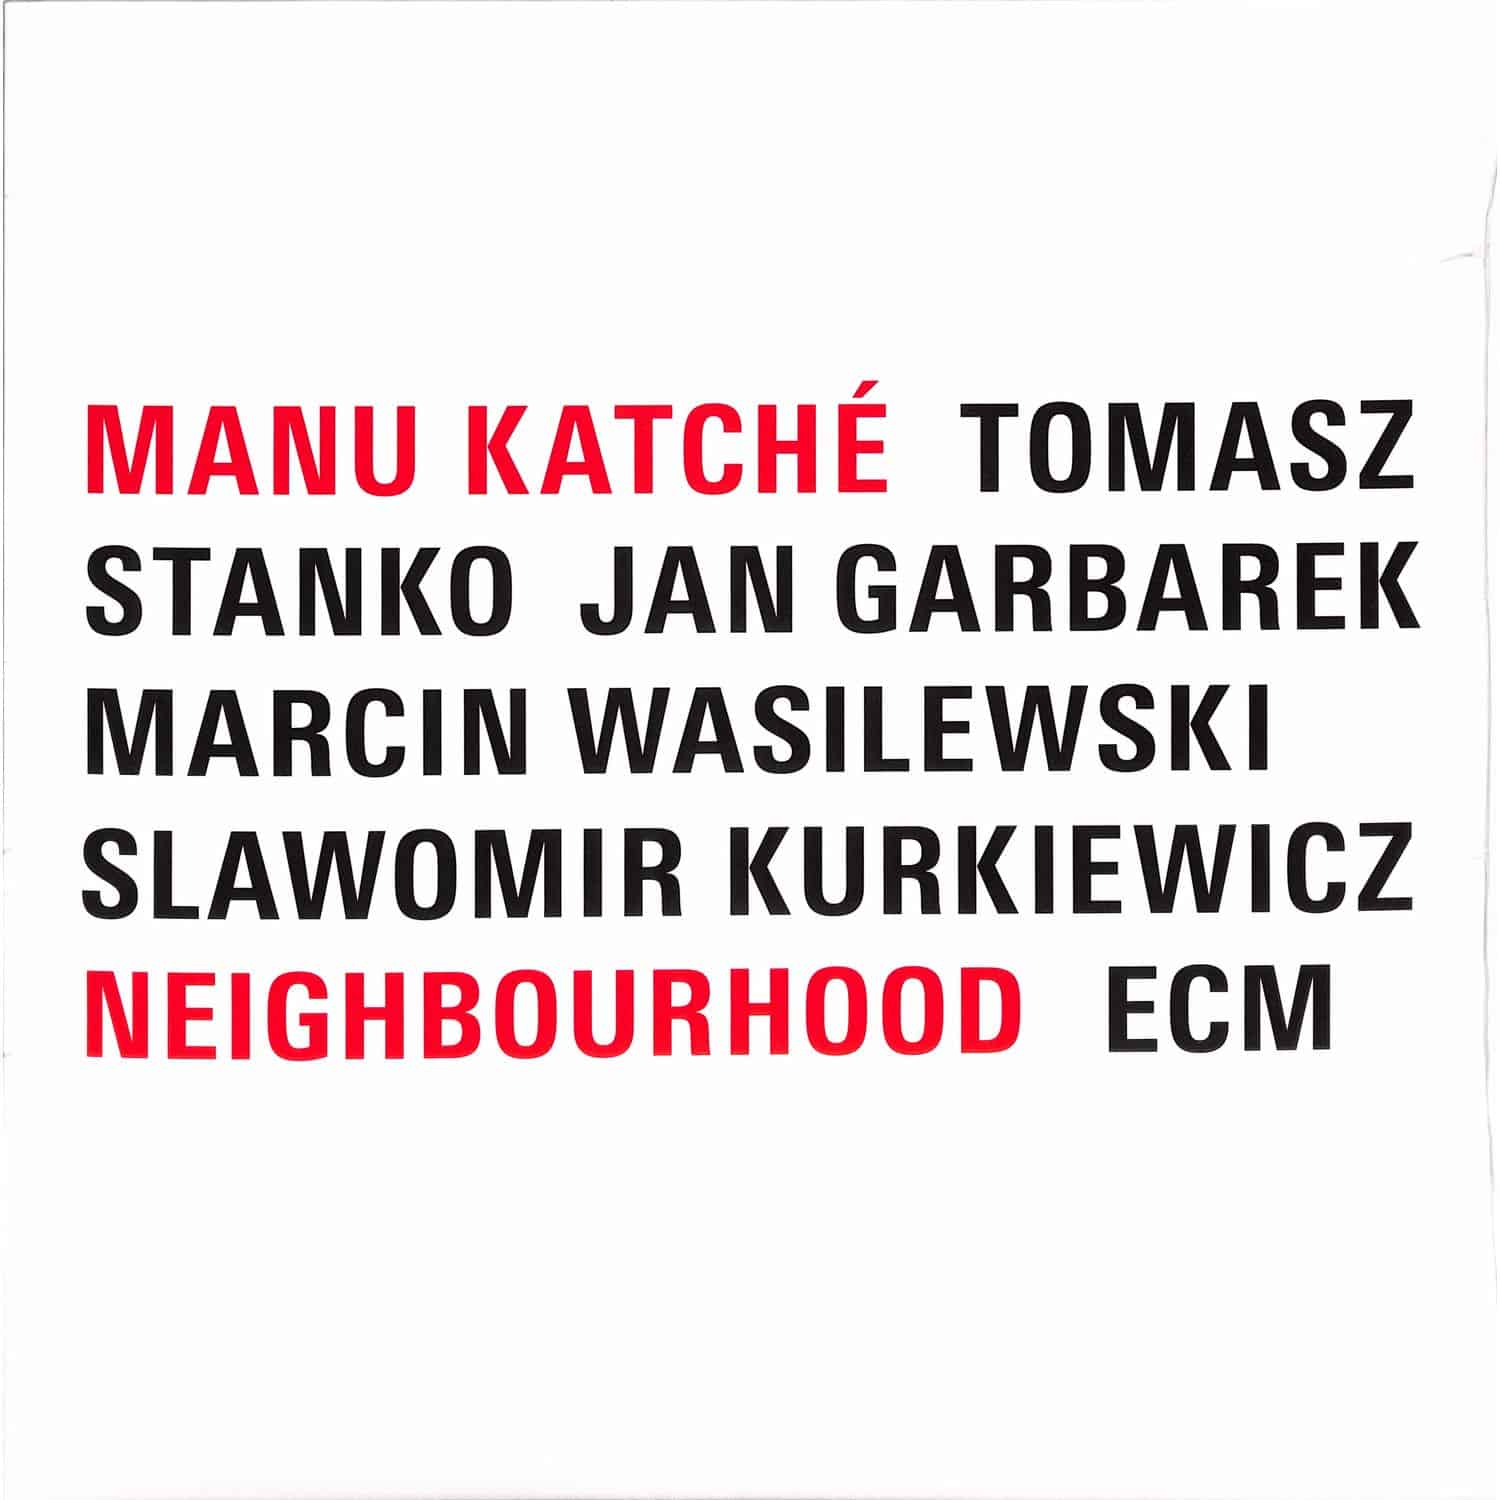 Manu Katch / Manu Katch - NEIGHBOURHOOD 